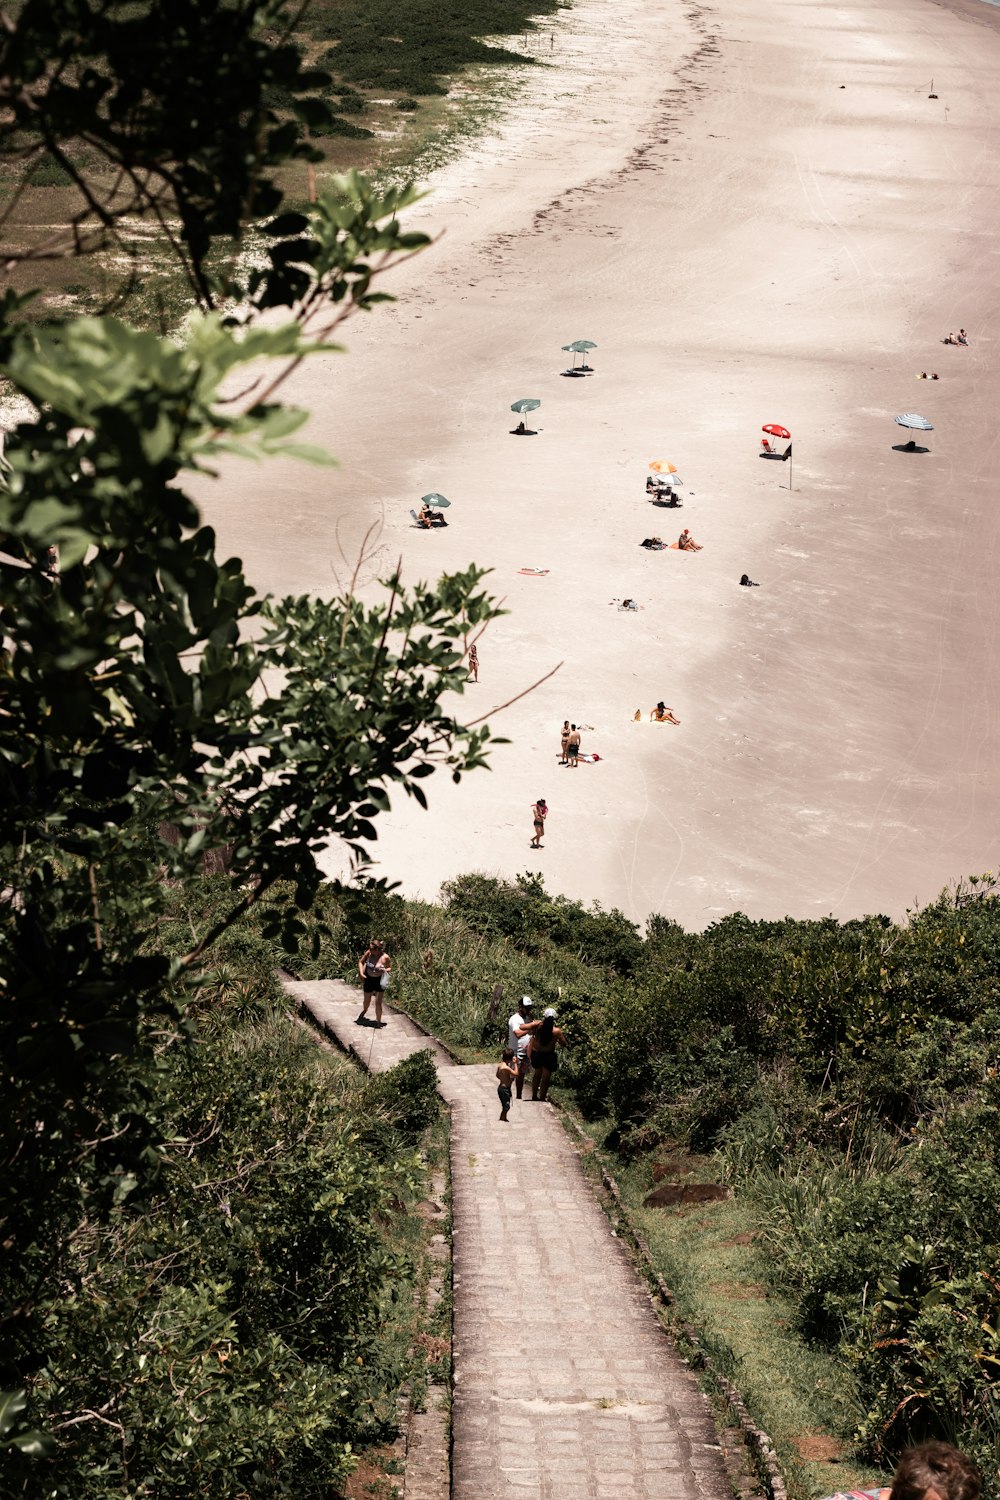 Un grupo de personas subiendo una colina junto a una playa